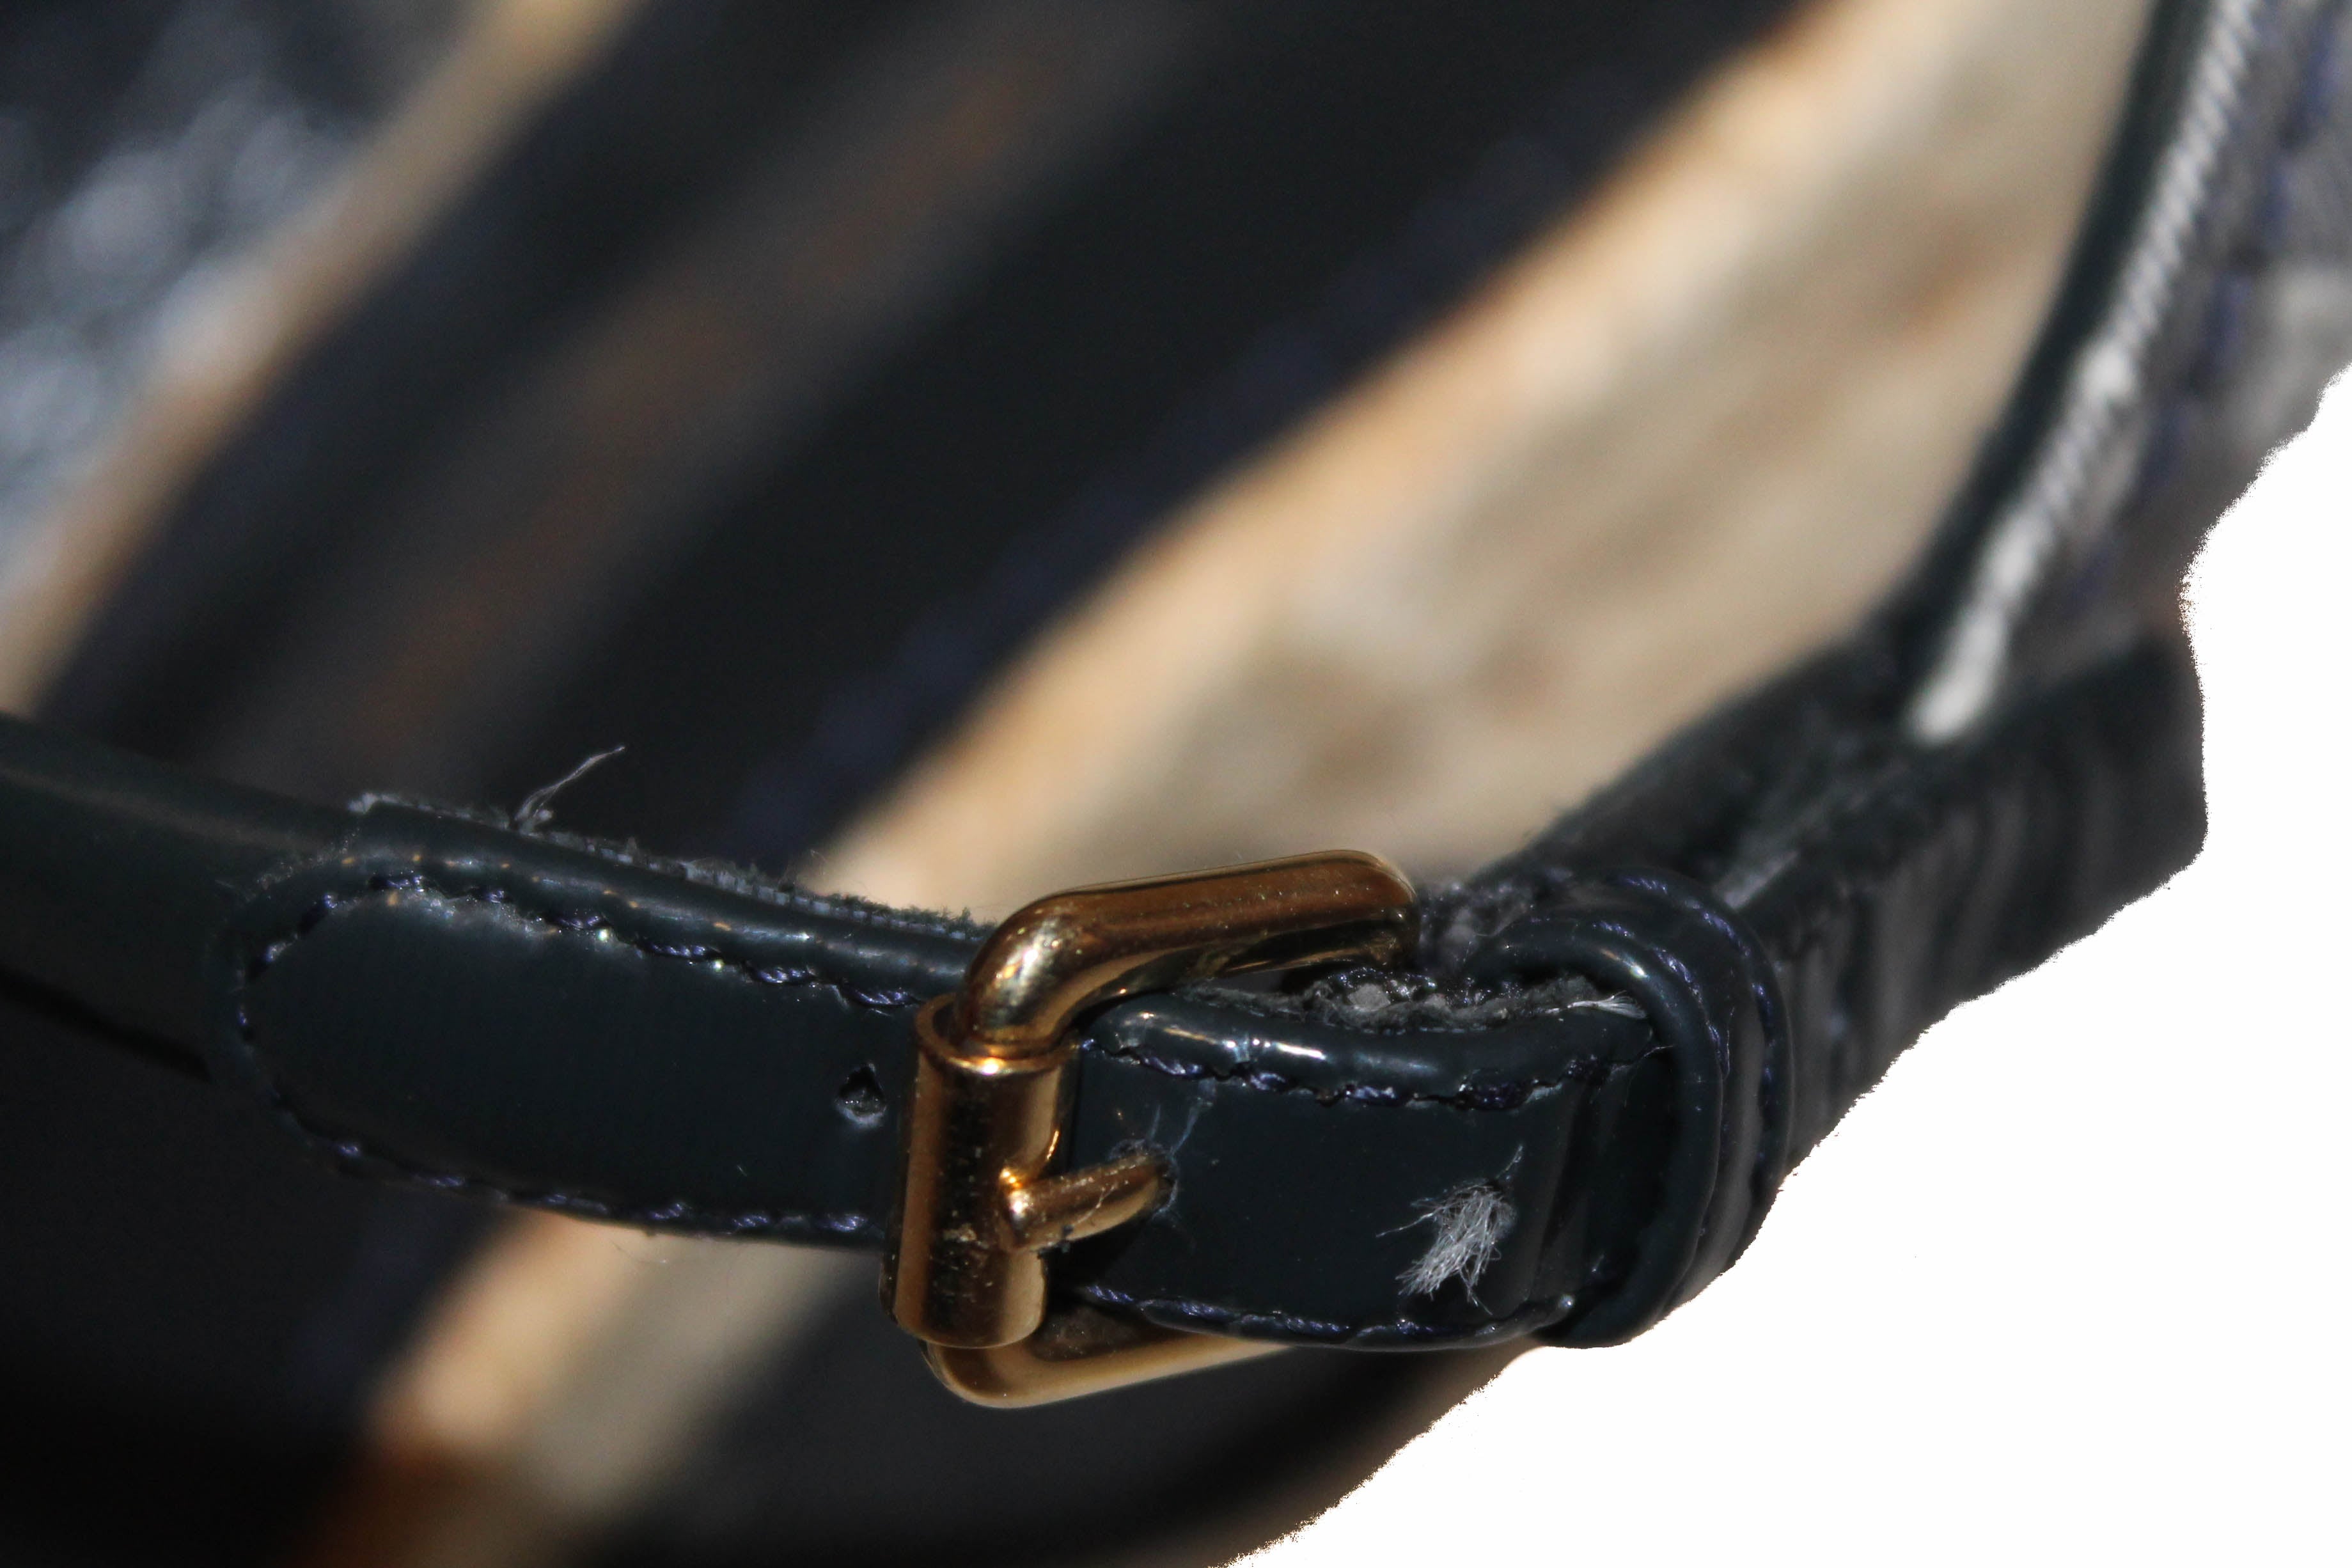 Louis Vuitton Black Monogram Idylle Buckle Ankle Boots Size 37.5